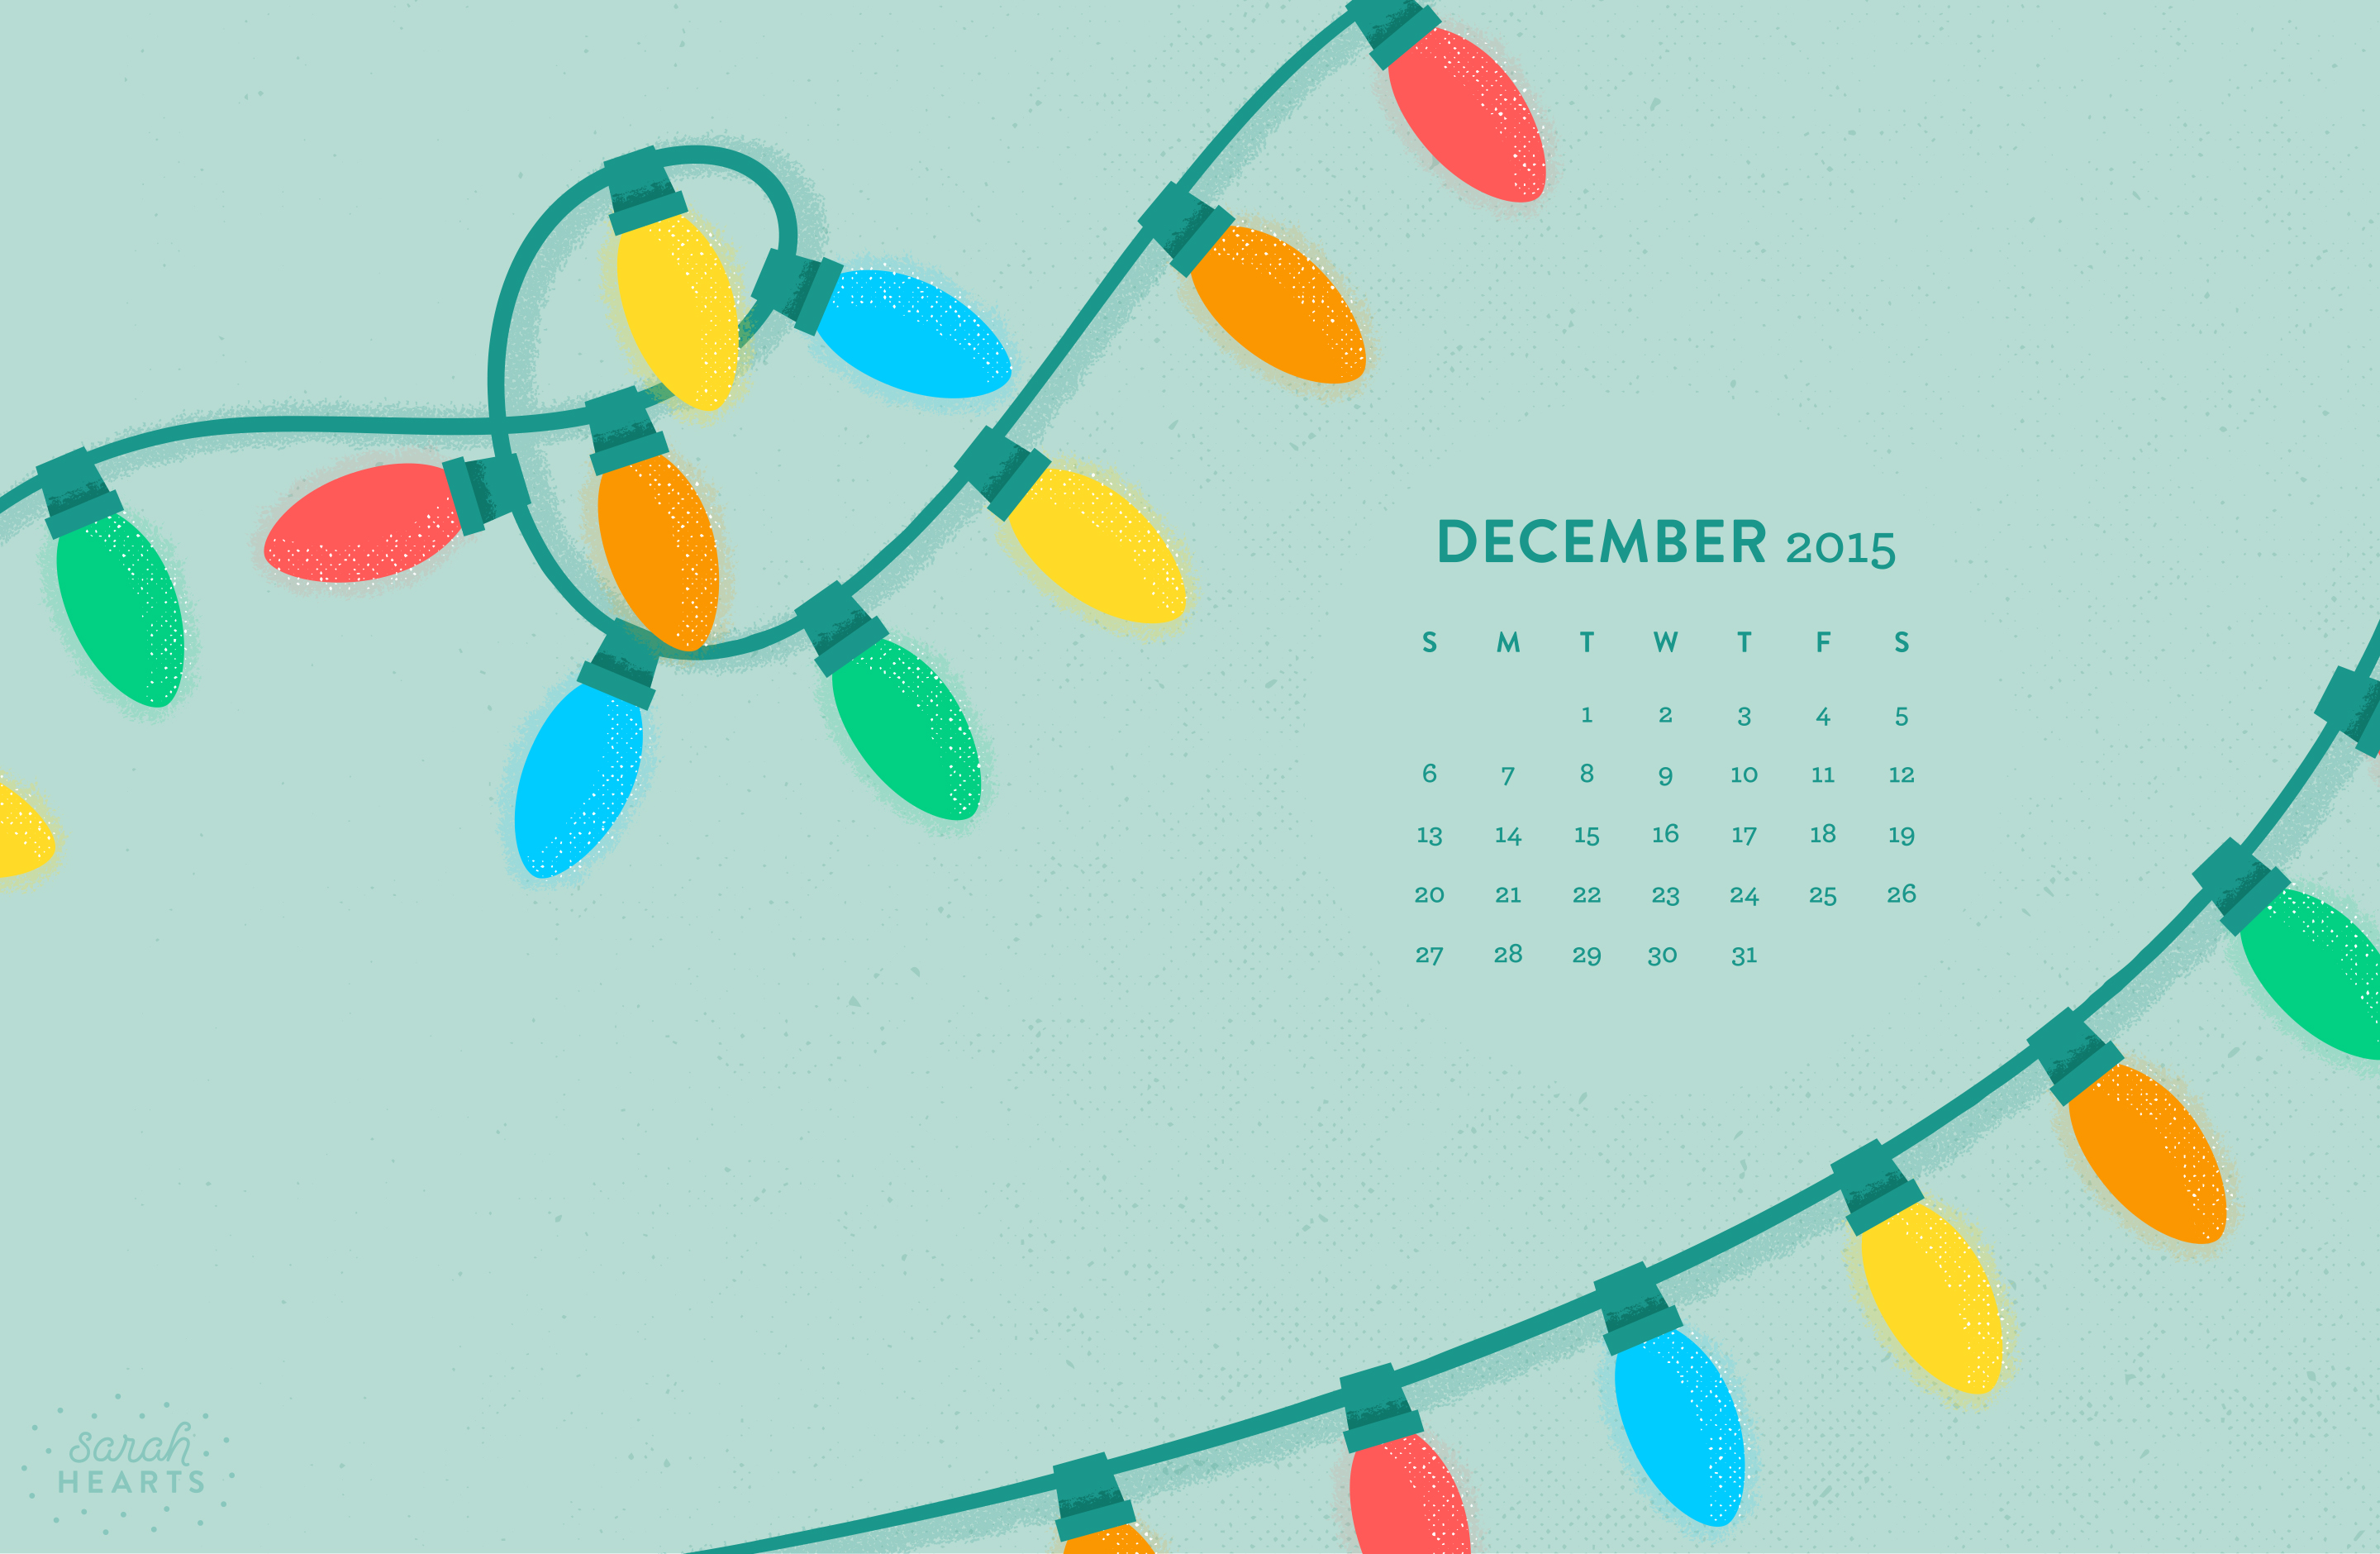 Hãy khám phá lịch tháng 12 năm 2015 đầy cảm hứng trên trang Sarah Hearts với rất nhiều thiết kế tuyệt đẹp, đem đến nhiều trải nghiệm mới lạ cho bạn.